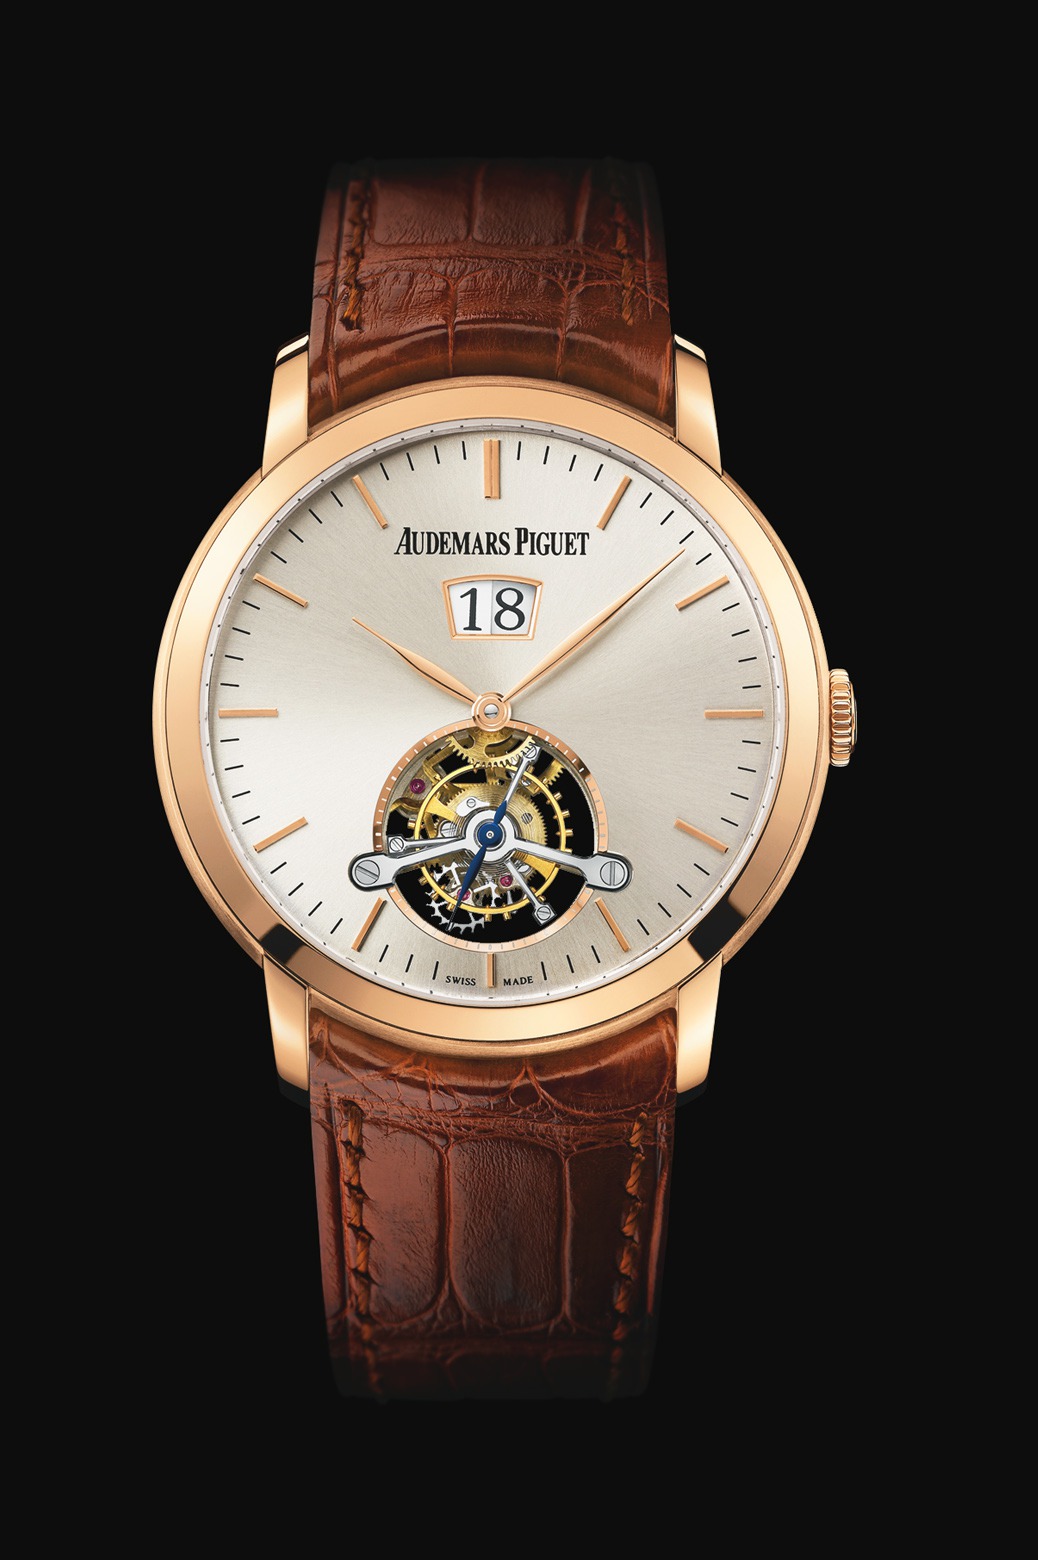 Audemars Piguet Jules Audemars Large Date Tourbillon Pink Gold watch REF: 26559OR.OO.D088CR.01 - Click Image to Close